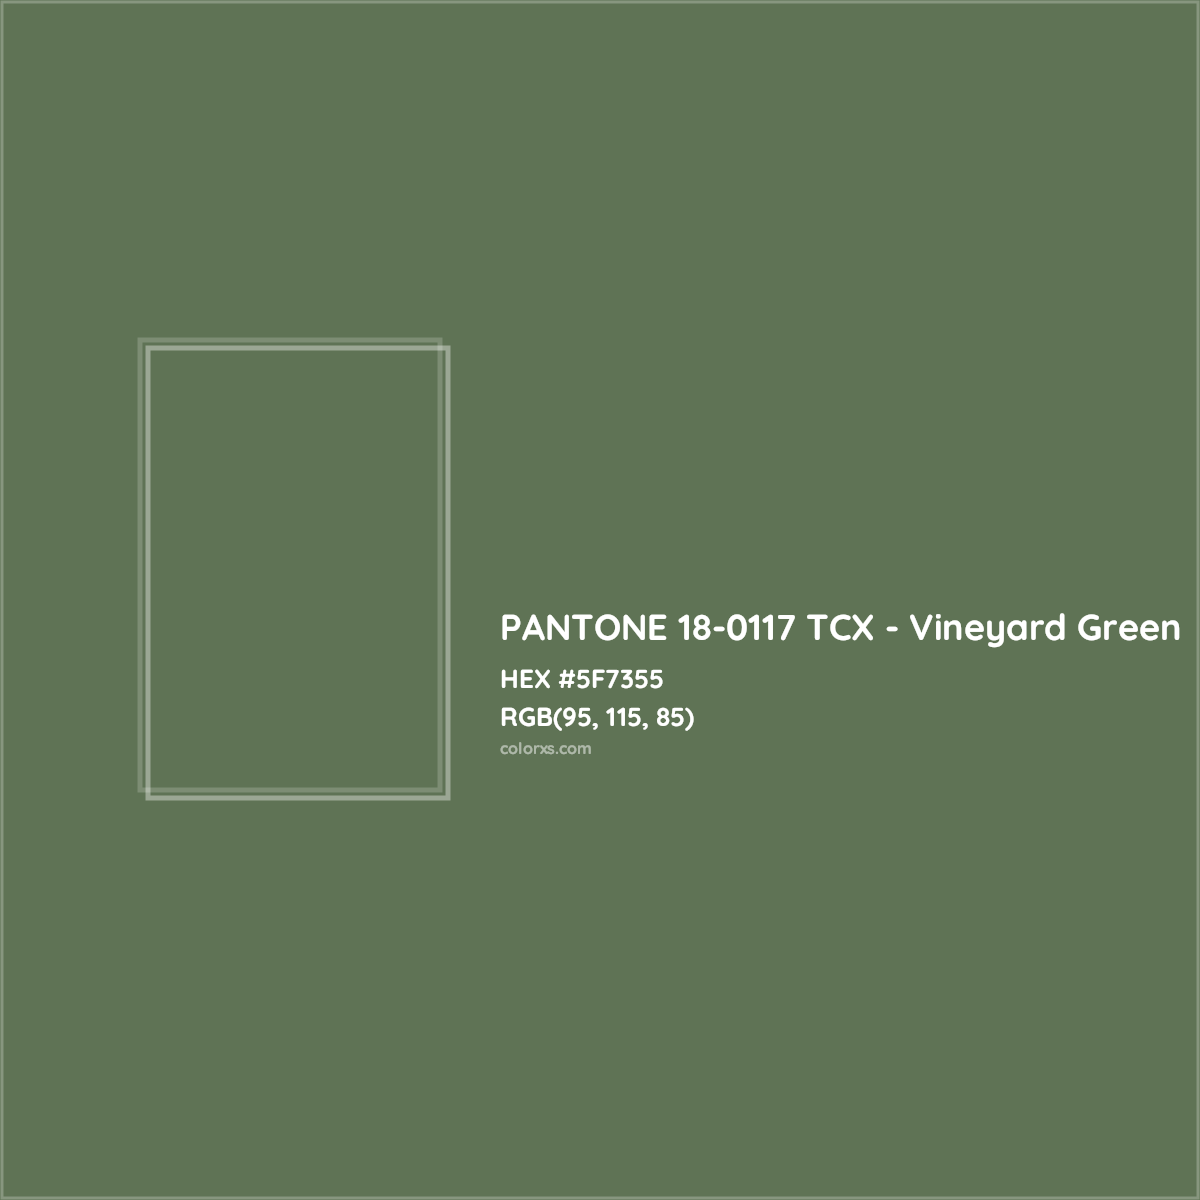 HEX #5F7355 PANTONE 18-0117 TCX - Vineyard Green CMS Pantone TCX - Color Code